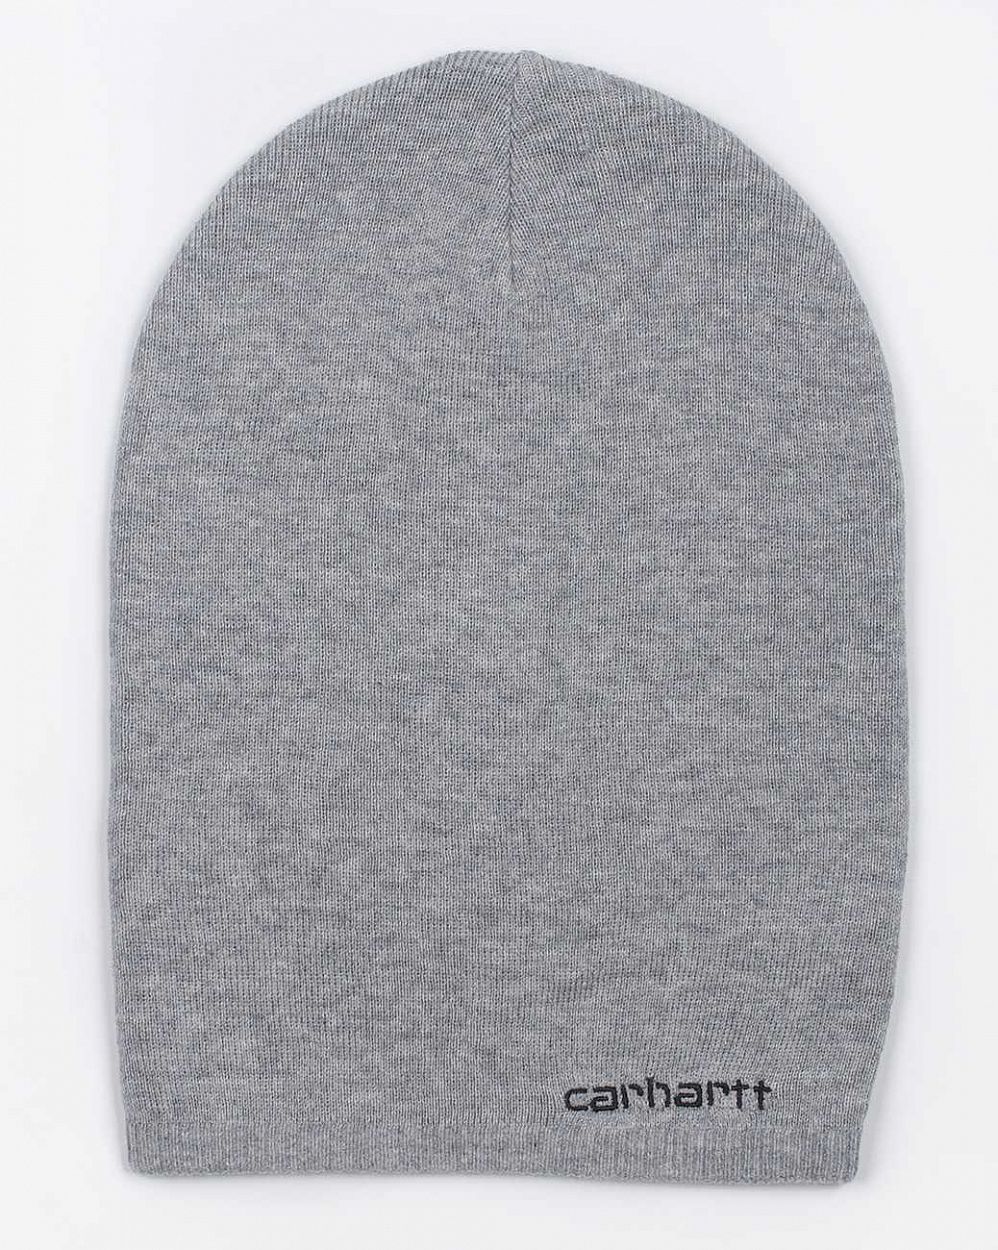 Женская шапка чулок Carhartt WIP Embroidery Beanie Grey отзывы